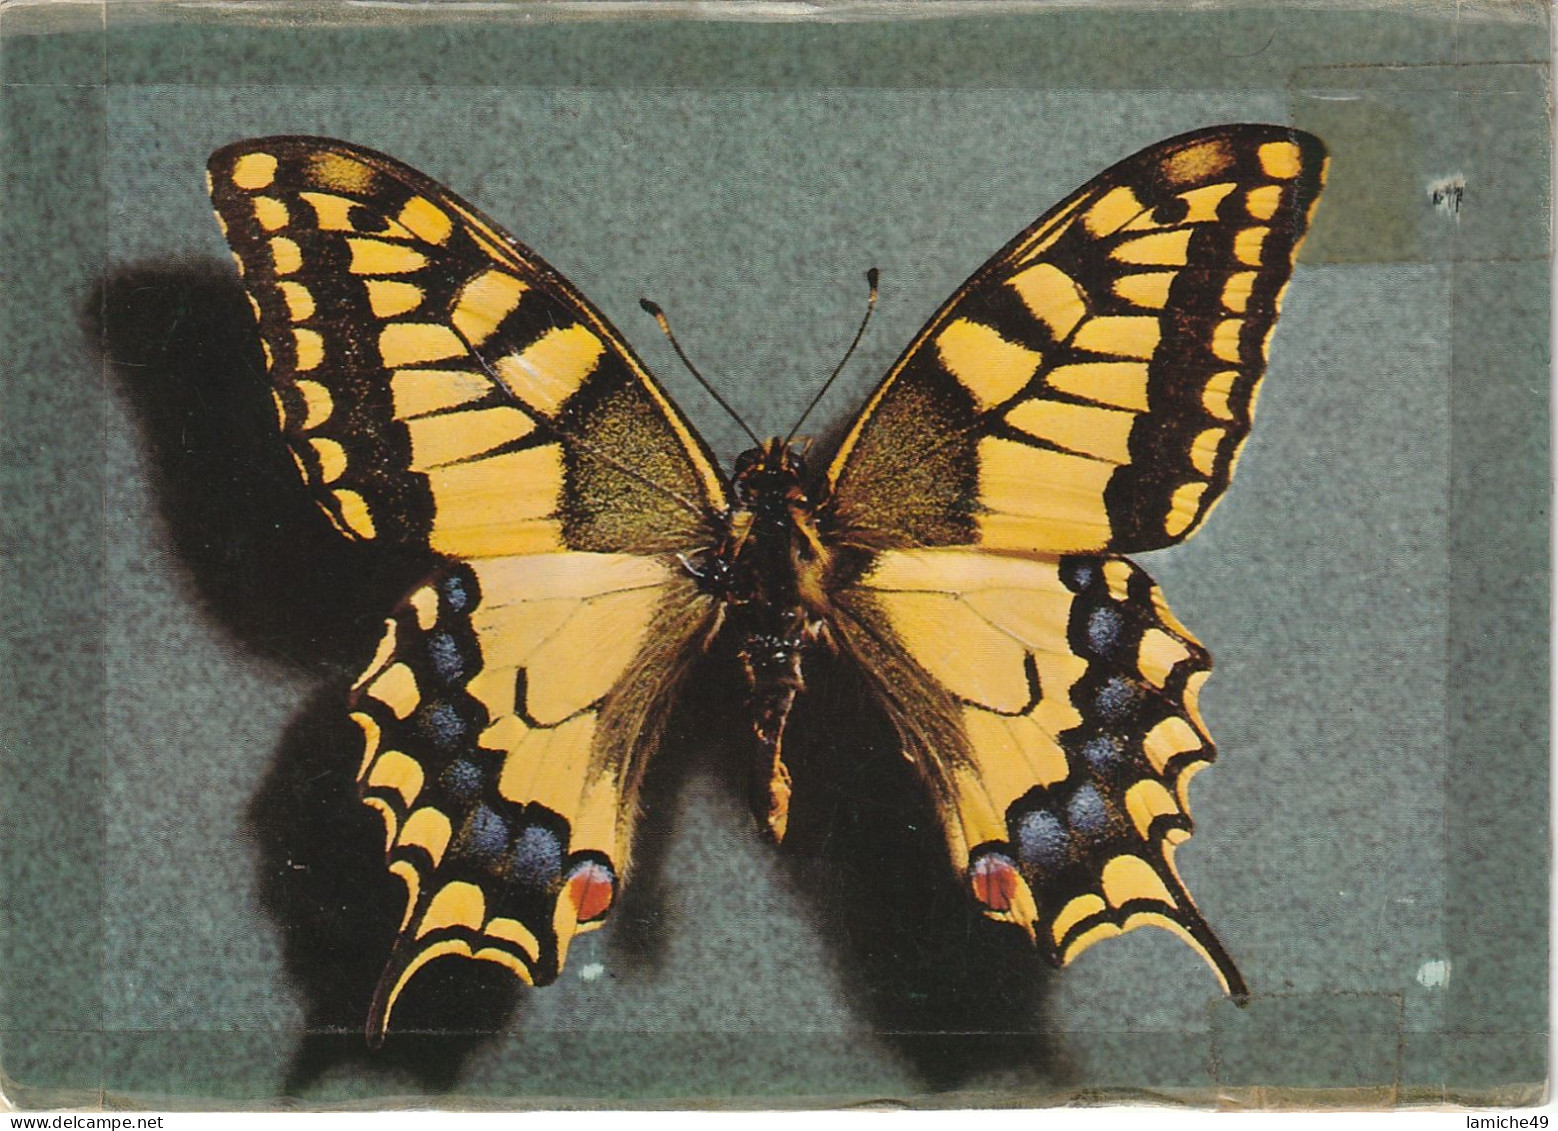 5 Cartes papillon jaune citron GONEPTERYX RHAMNI  aux anémones LIMENITIS publicitaire